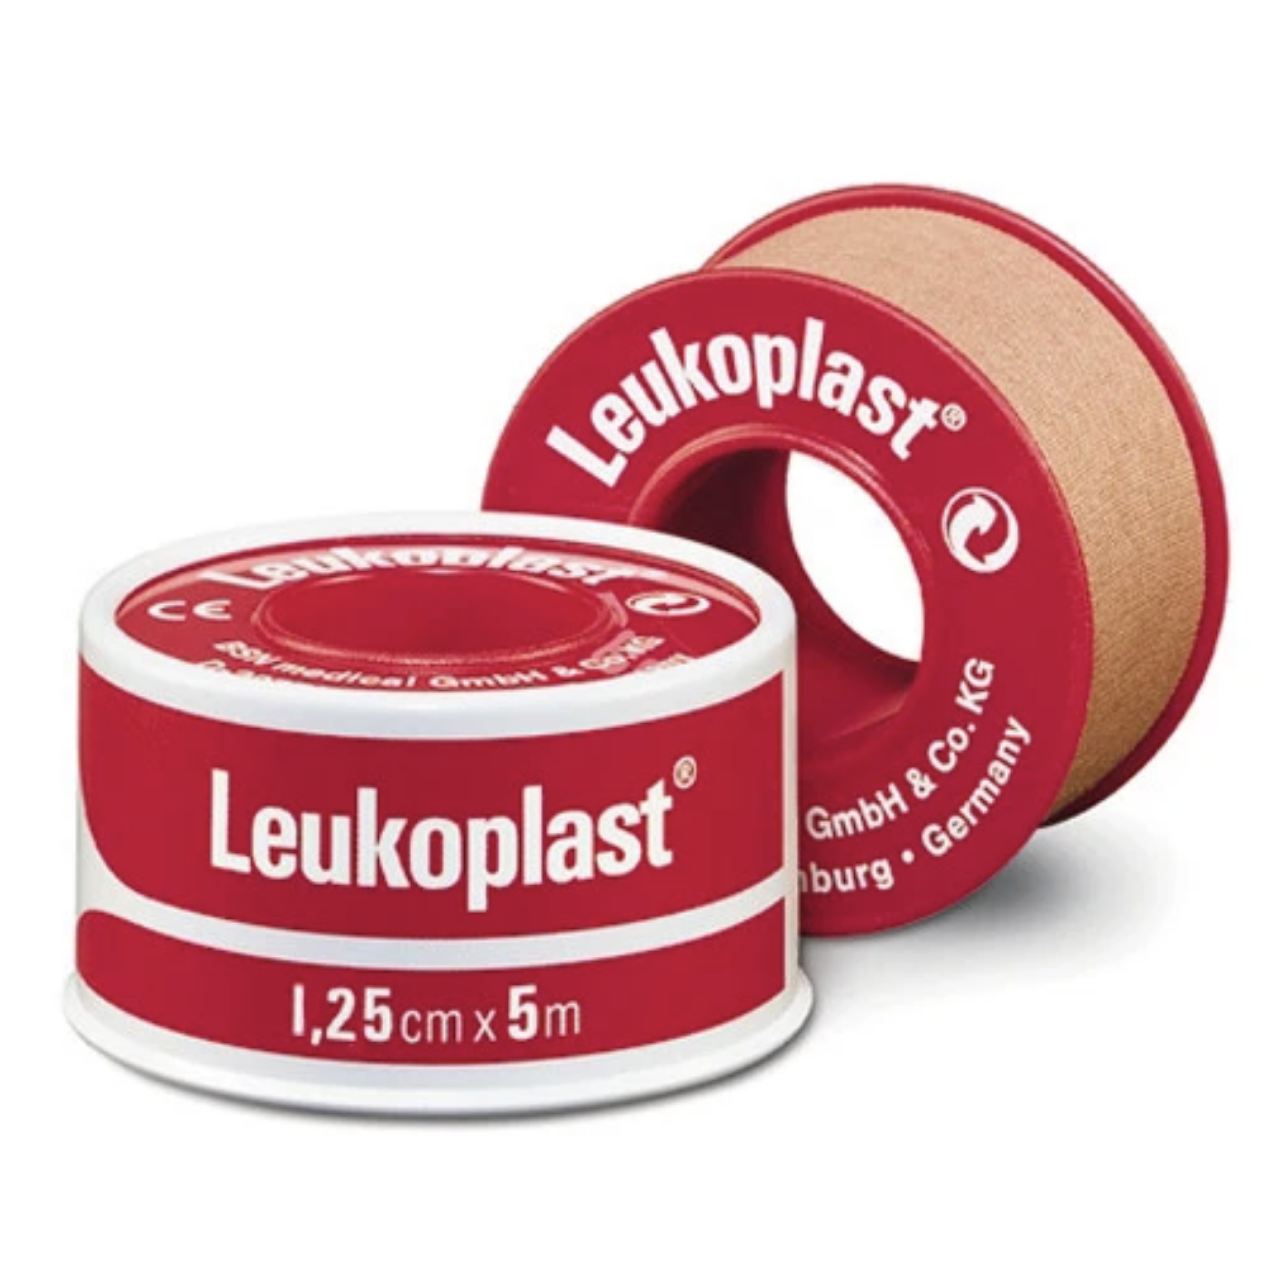 Leukoplast Standard Red Spool Tape 1.25cm x 5m image 0